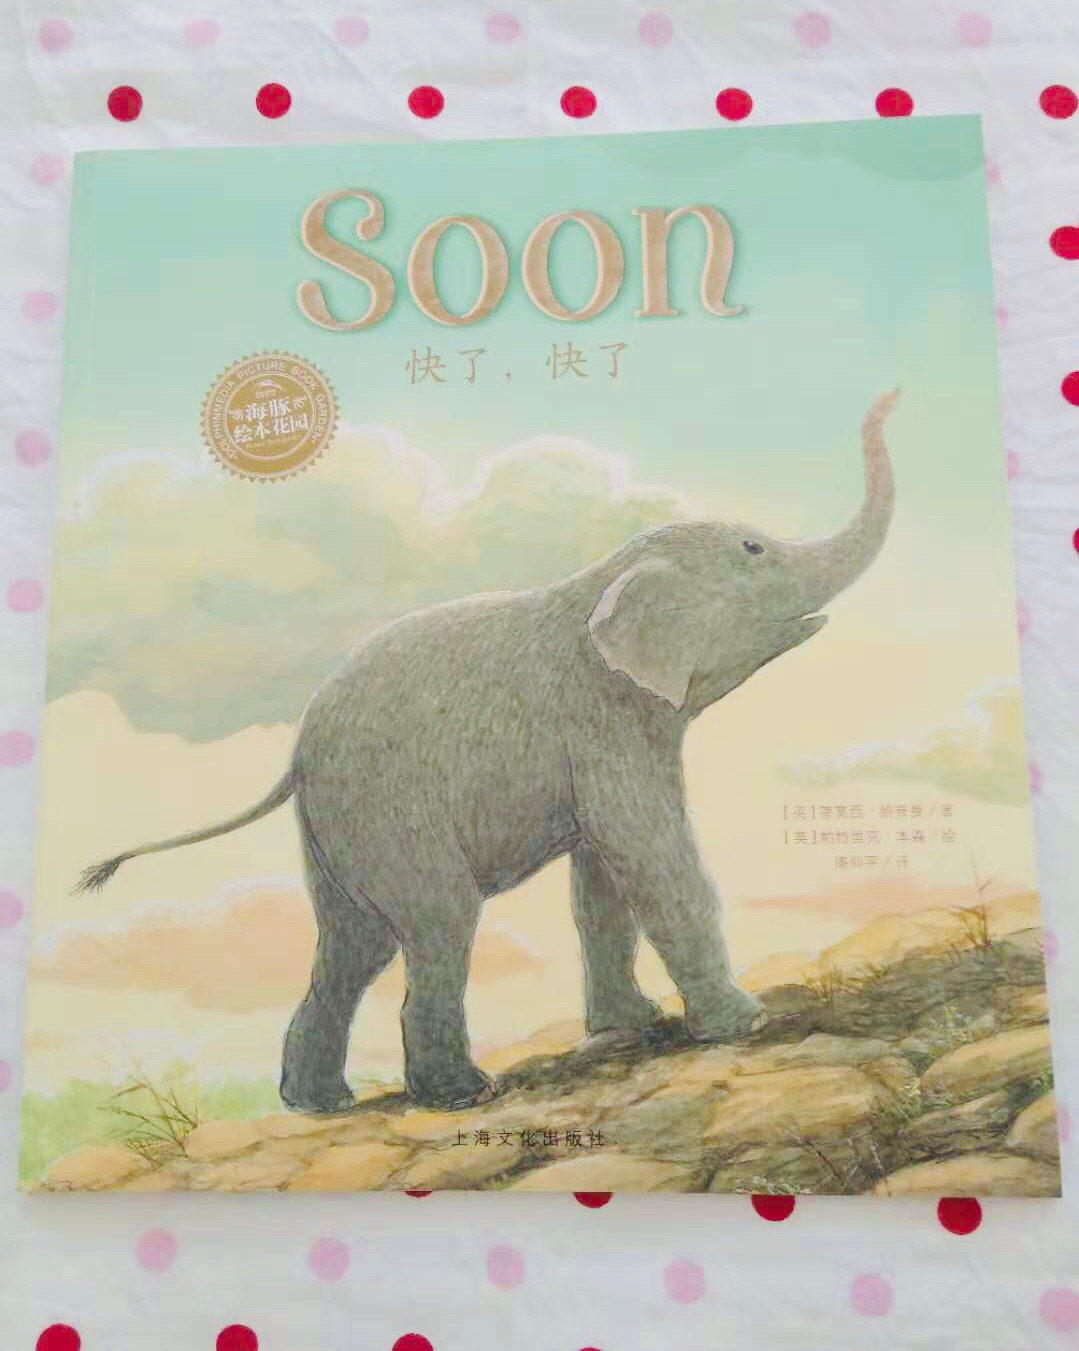 小象通过和妈妈的一次旅行，见识了丰富多彩的世界，也增进了和妈妈的感情